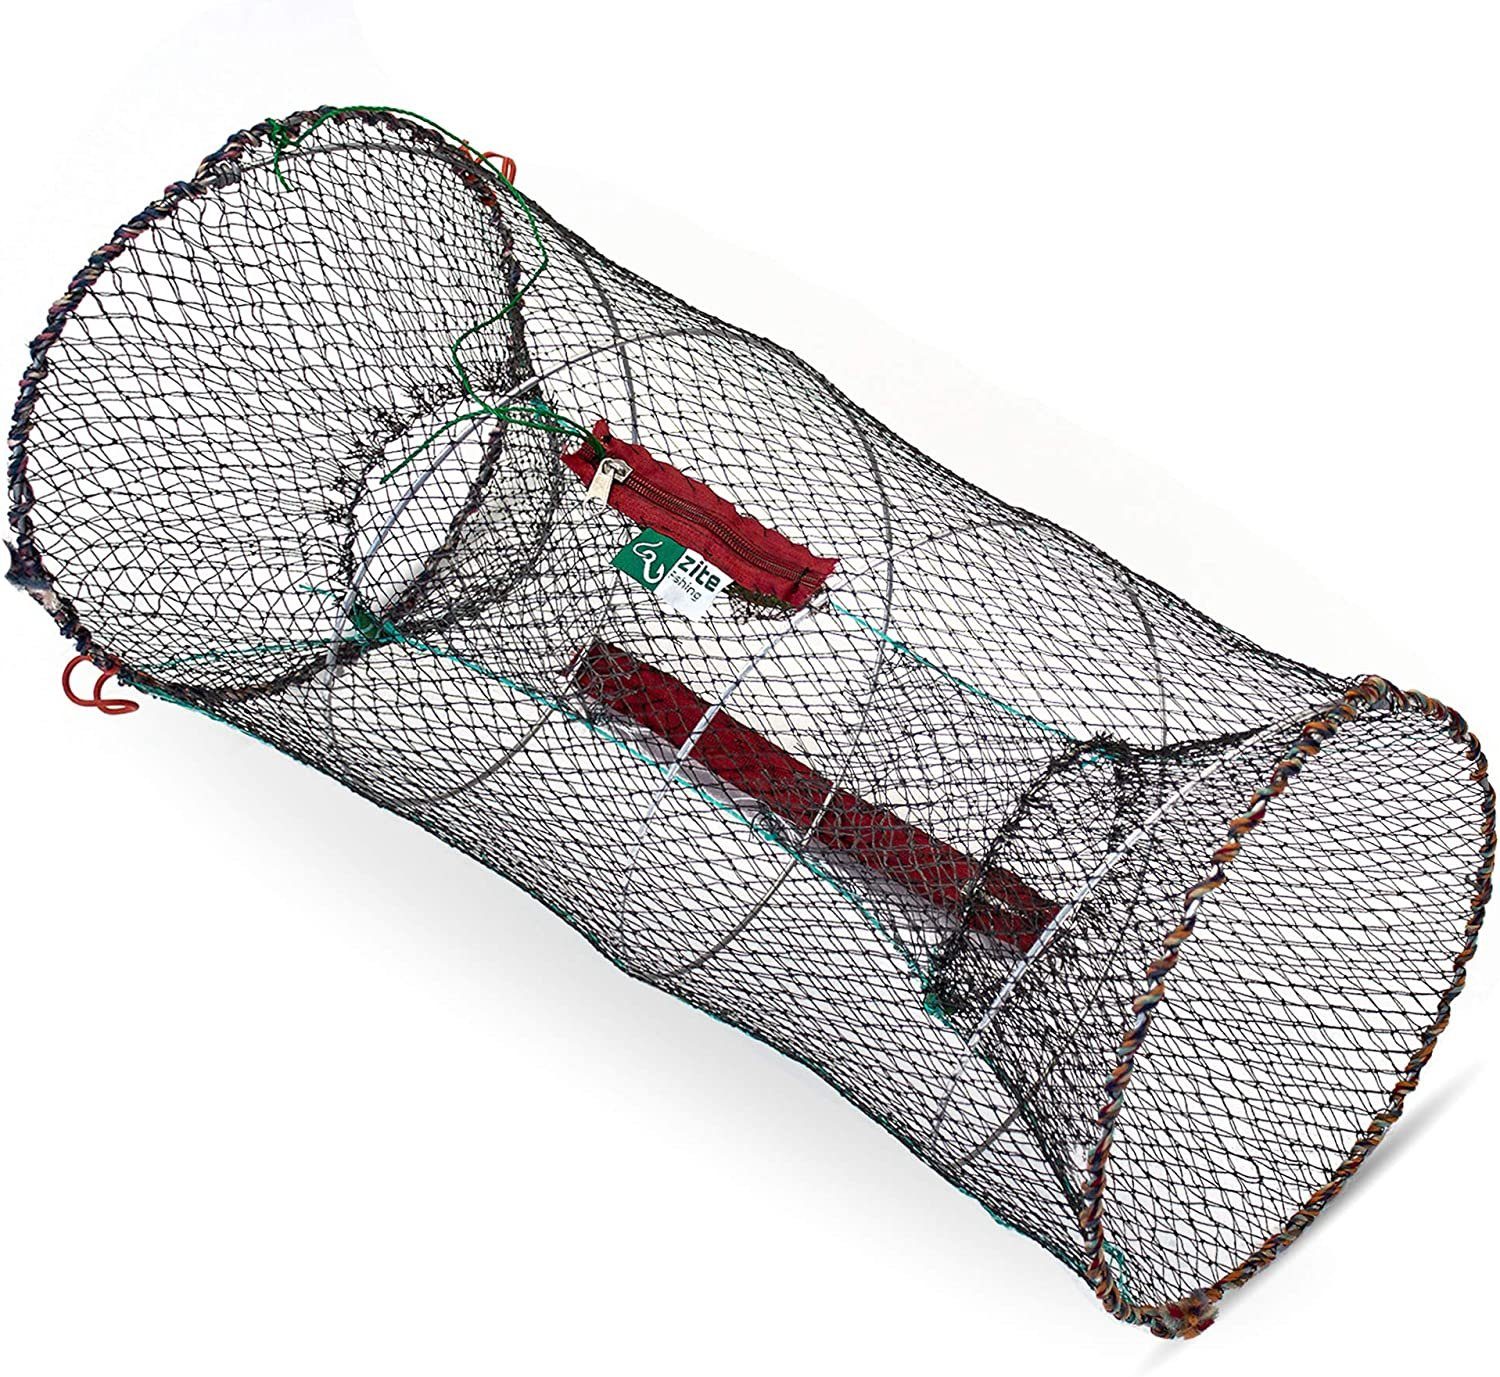 Zite Angelkescher Köderfischreuse Rund 30x60cm, mit Futterbeutel und Reißverschluss